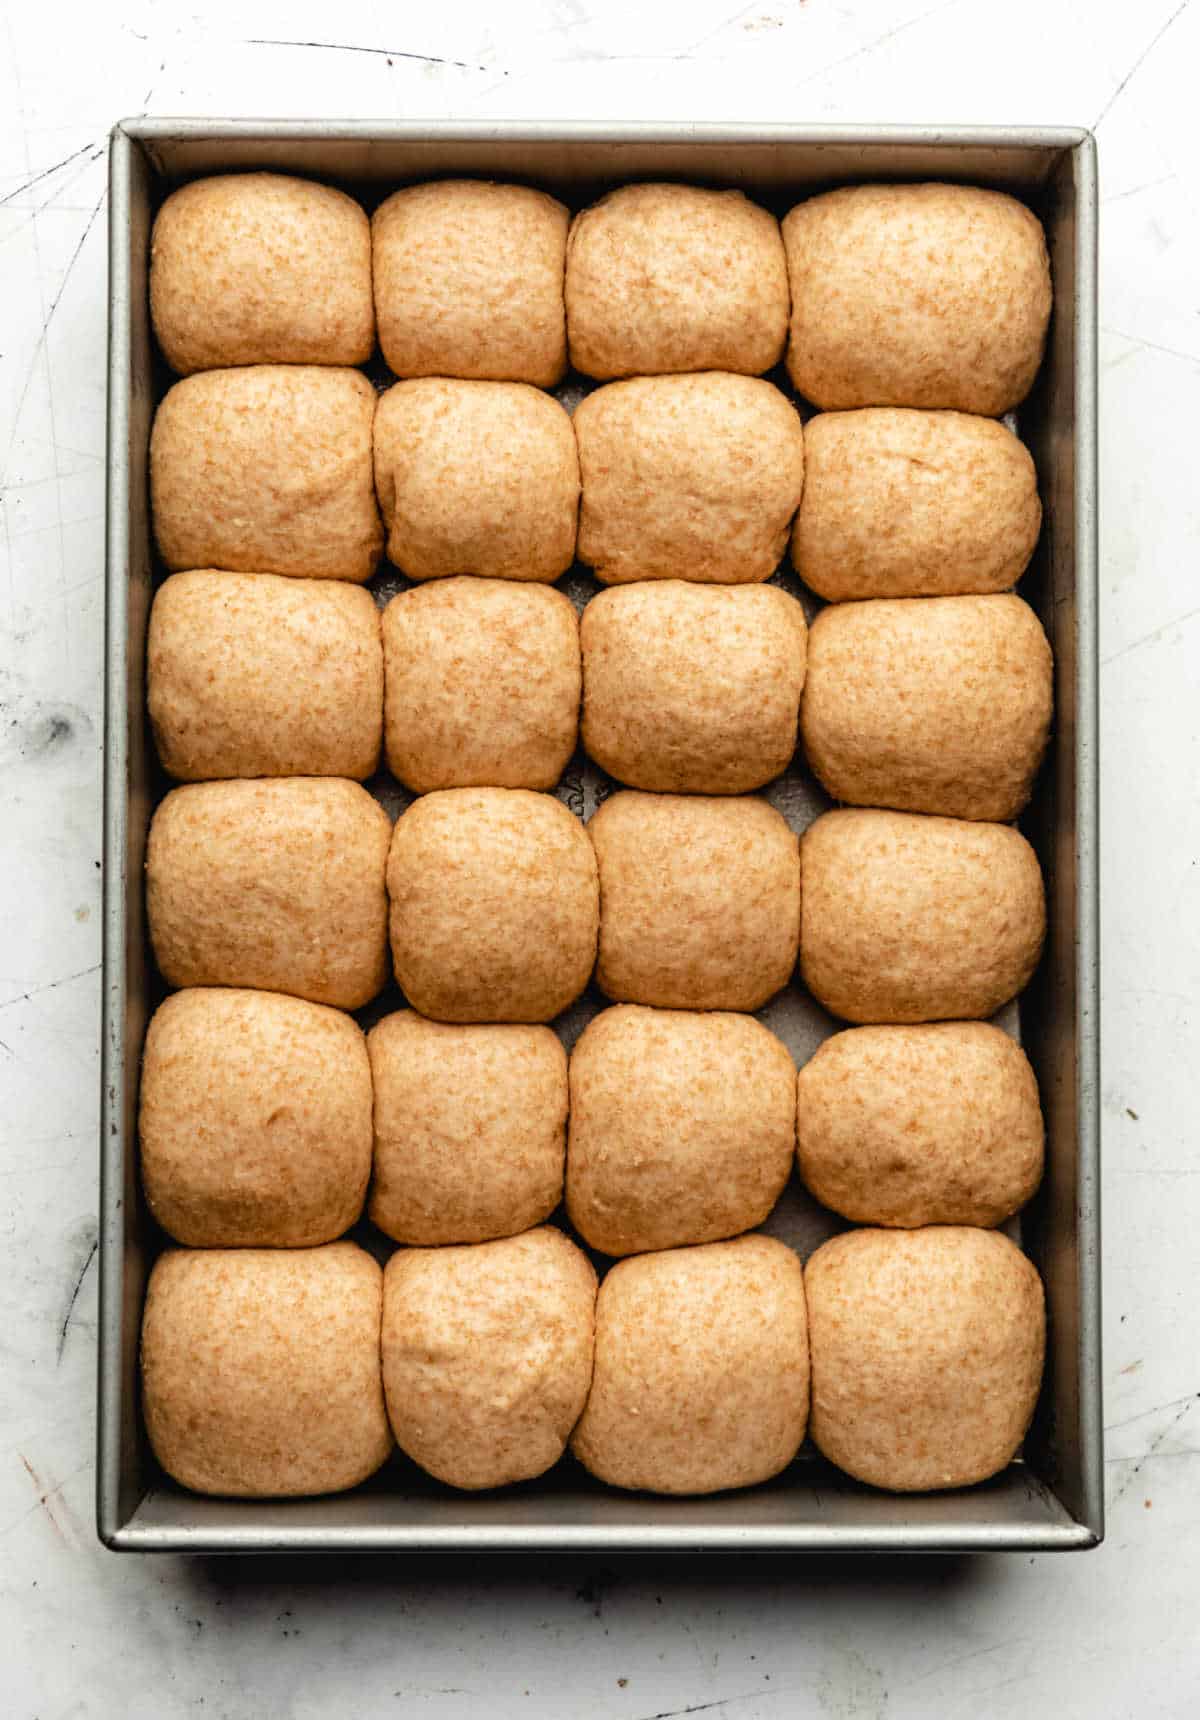 Twenty four risen rolls in a baking pan. 